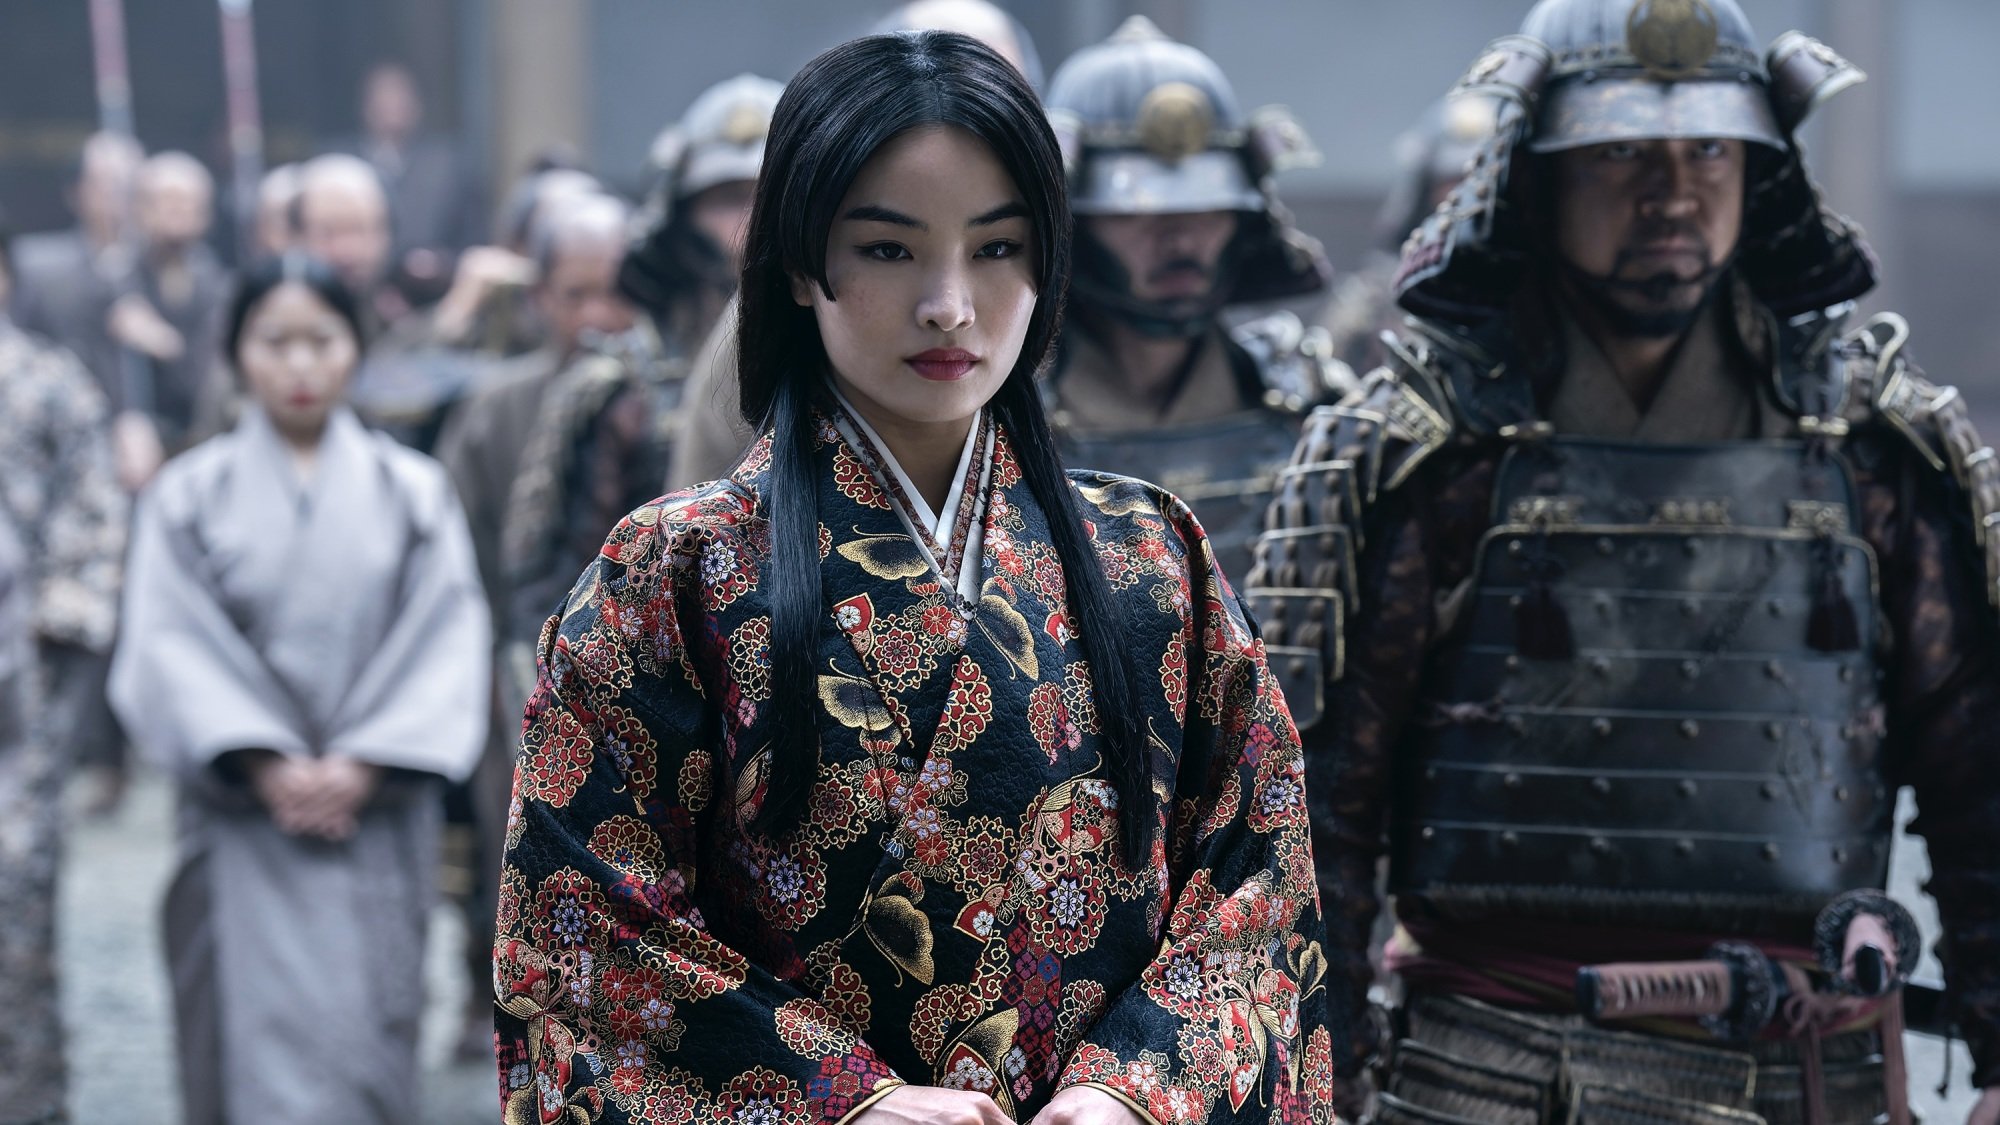 Mariko de « Shōgun », vêtue d'un kosode noir, rouge et or, marche entourée de sa suite de soldats.